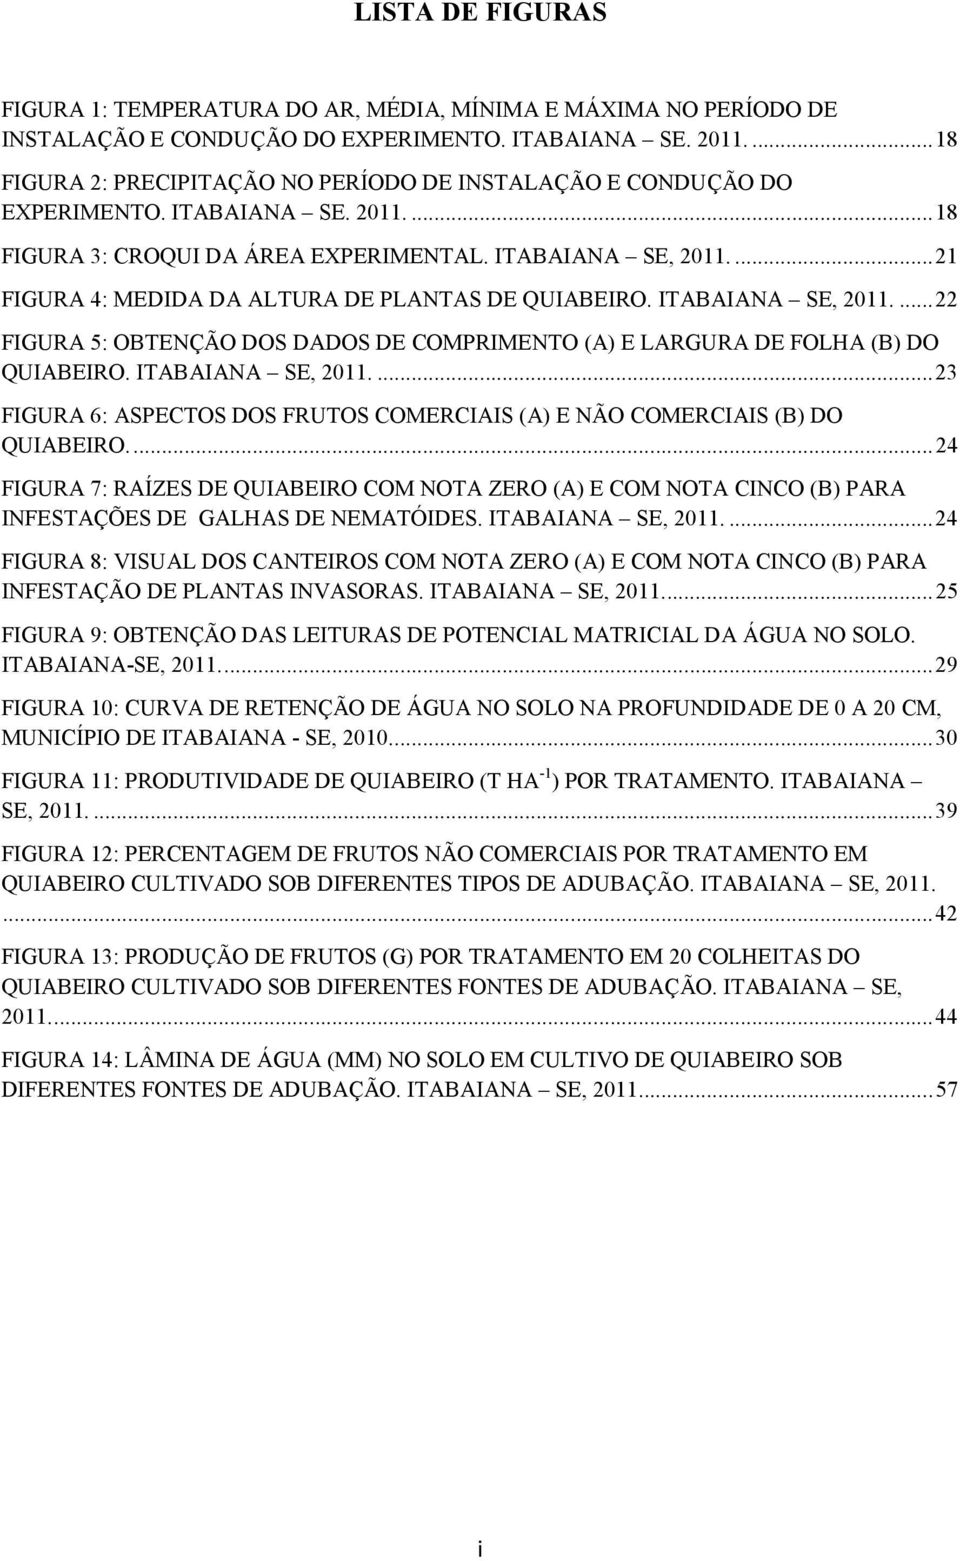 ... 21 FIGURA 4: MEDIDA DA ALTURA DE PLANTAS DE QUIABEIRO. ITABAIANA SE, 2011.... 22 FIGURA 5: OBTENÇÃO DOS DADOS DE COMPRIMENTO (A) E LARGURA DE FOLHA (B) DO QUIABEIRO. ITABAIANA SE, 2011.... 23 FIGURA 6: ASPECTOS DOS FRUTOS COMERCIAIS (A) E NÃO COMERCIAIS (B) DO QUIABEIRO.